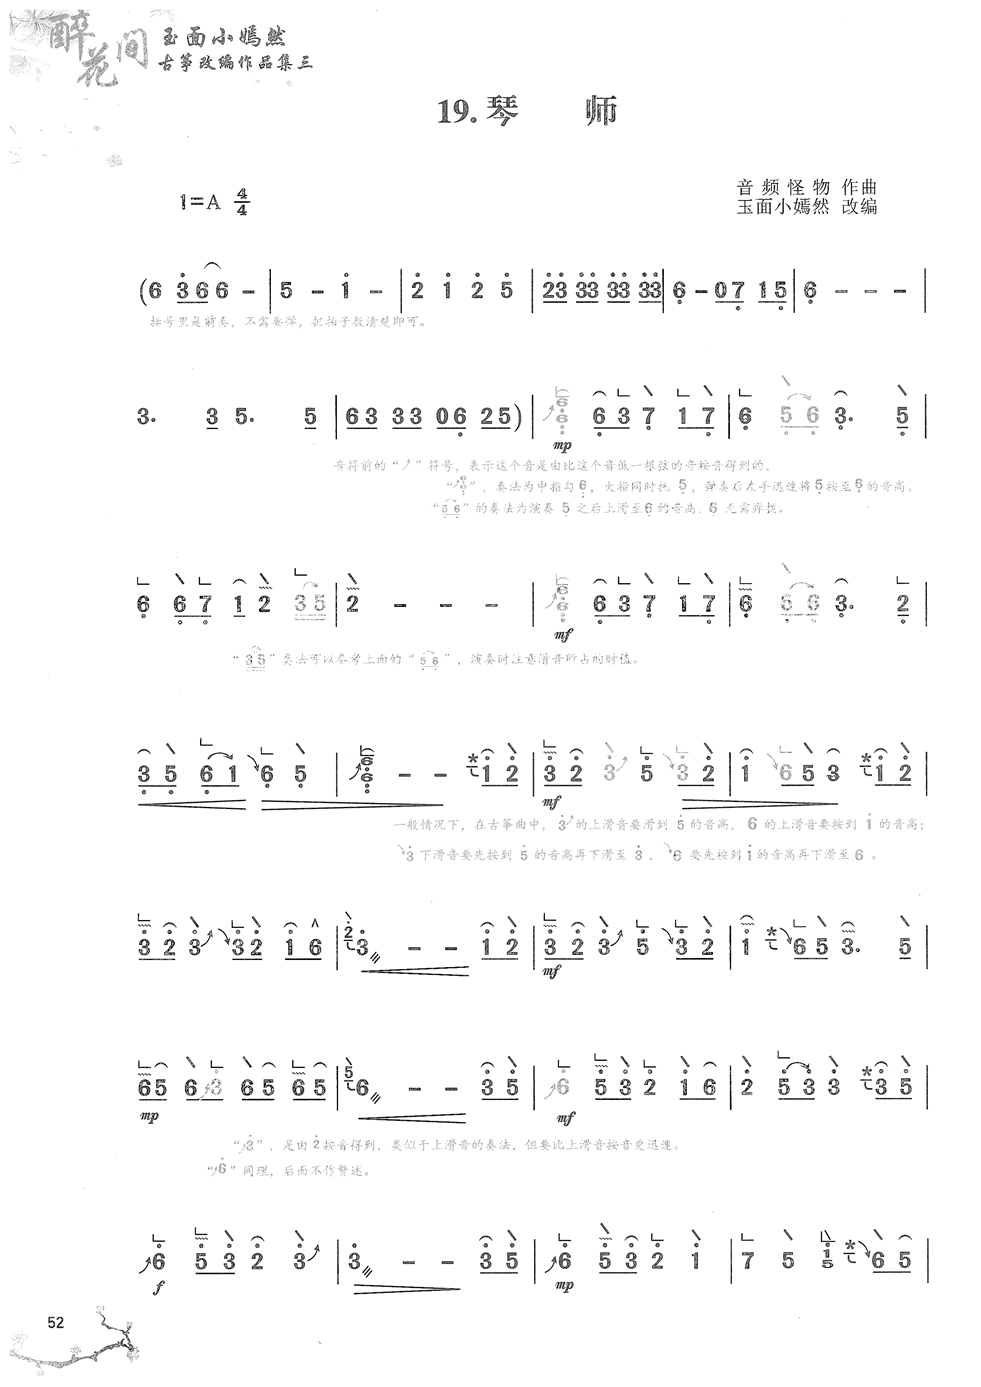 古筝曲《琴师》完整版简谱及伴奏音乐